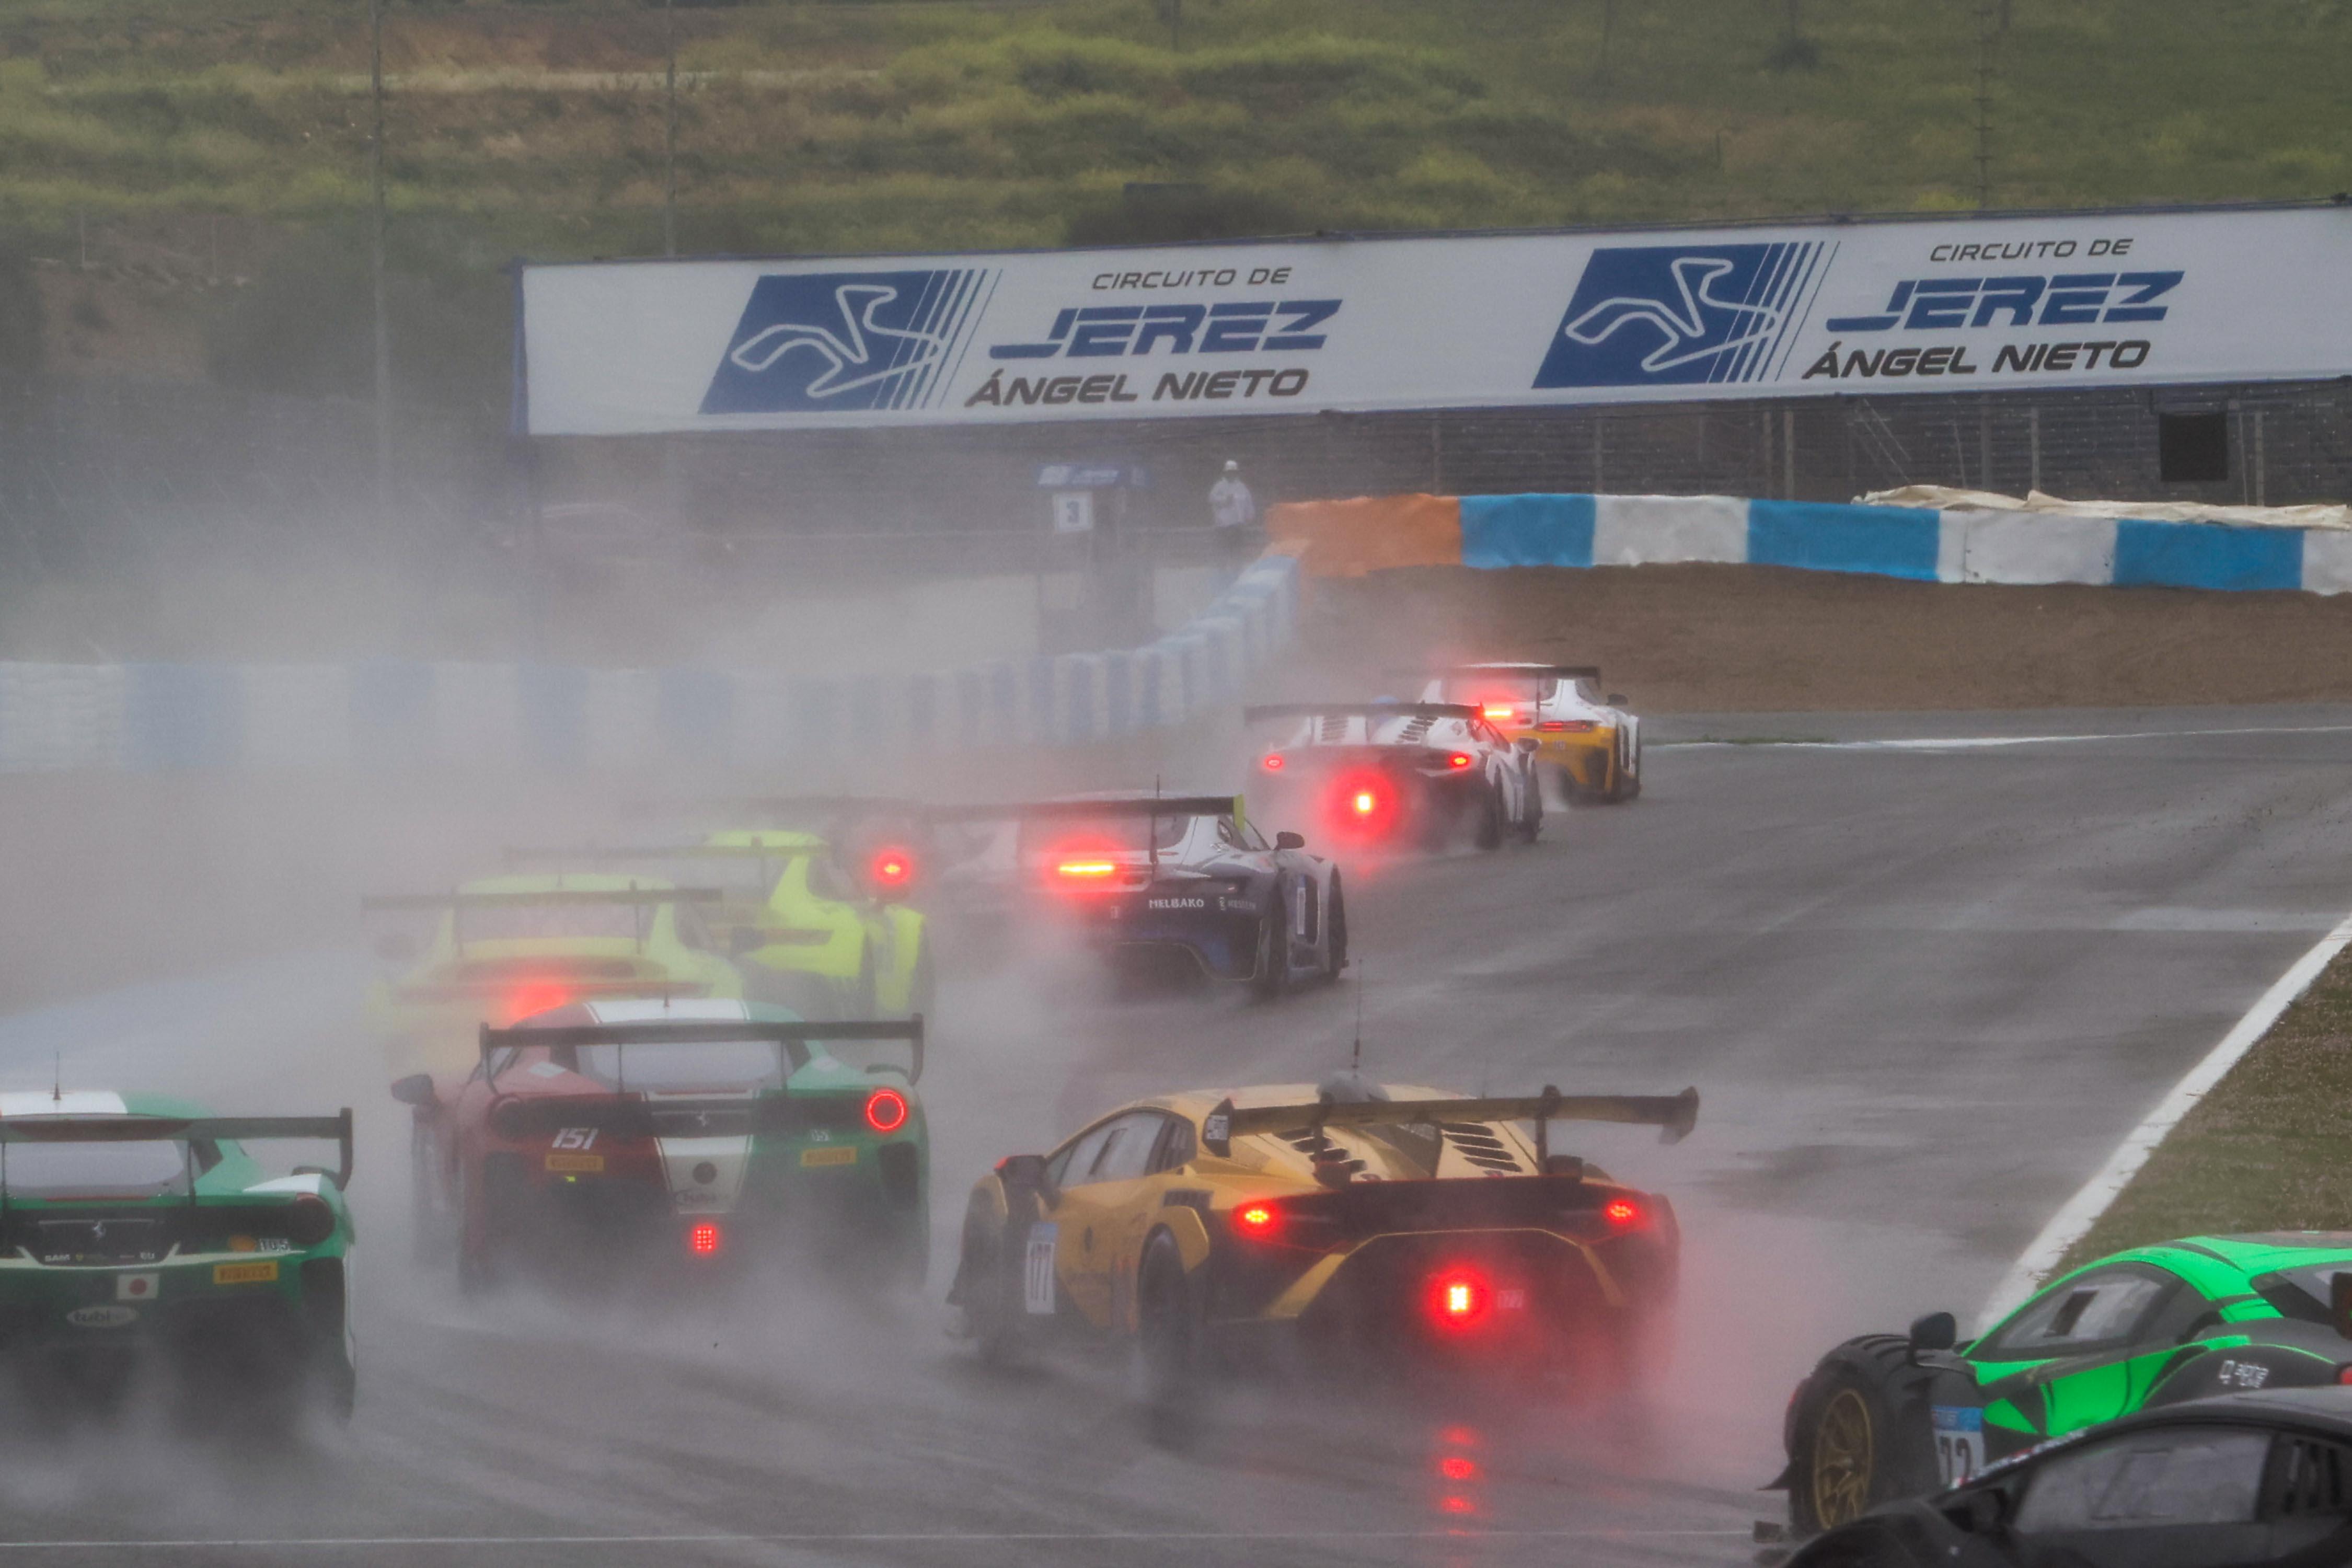 La lluvia, protagonista de la última jornada del certamen Winter Series, que llegaba a su fin en el Circuito de Jerez Ángel Nieto